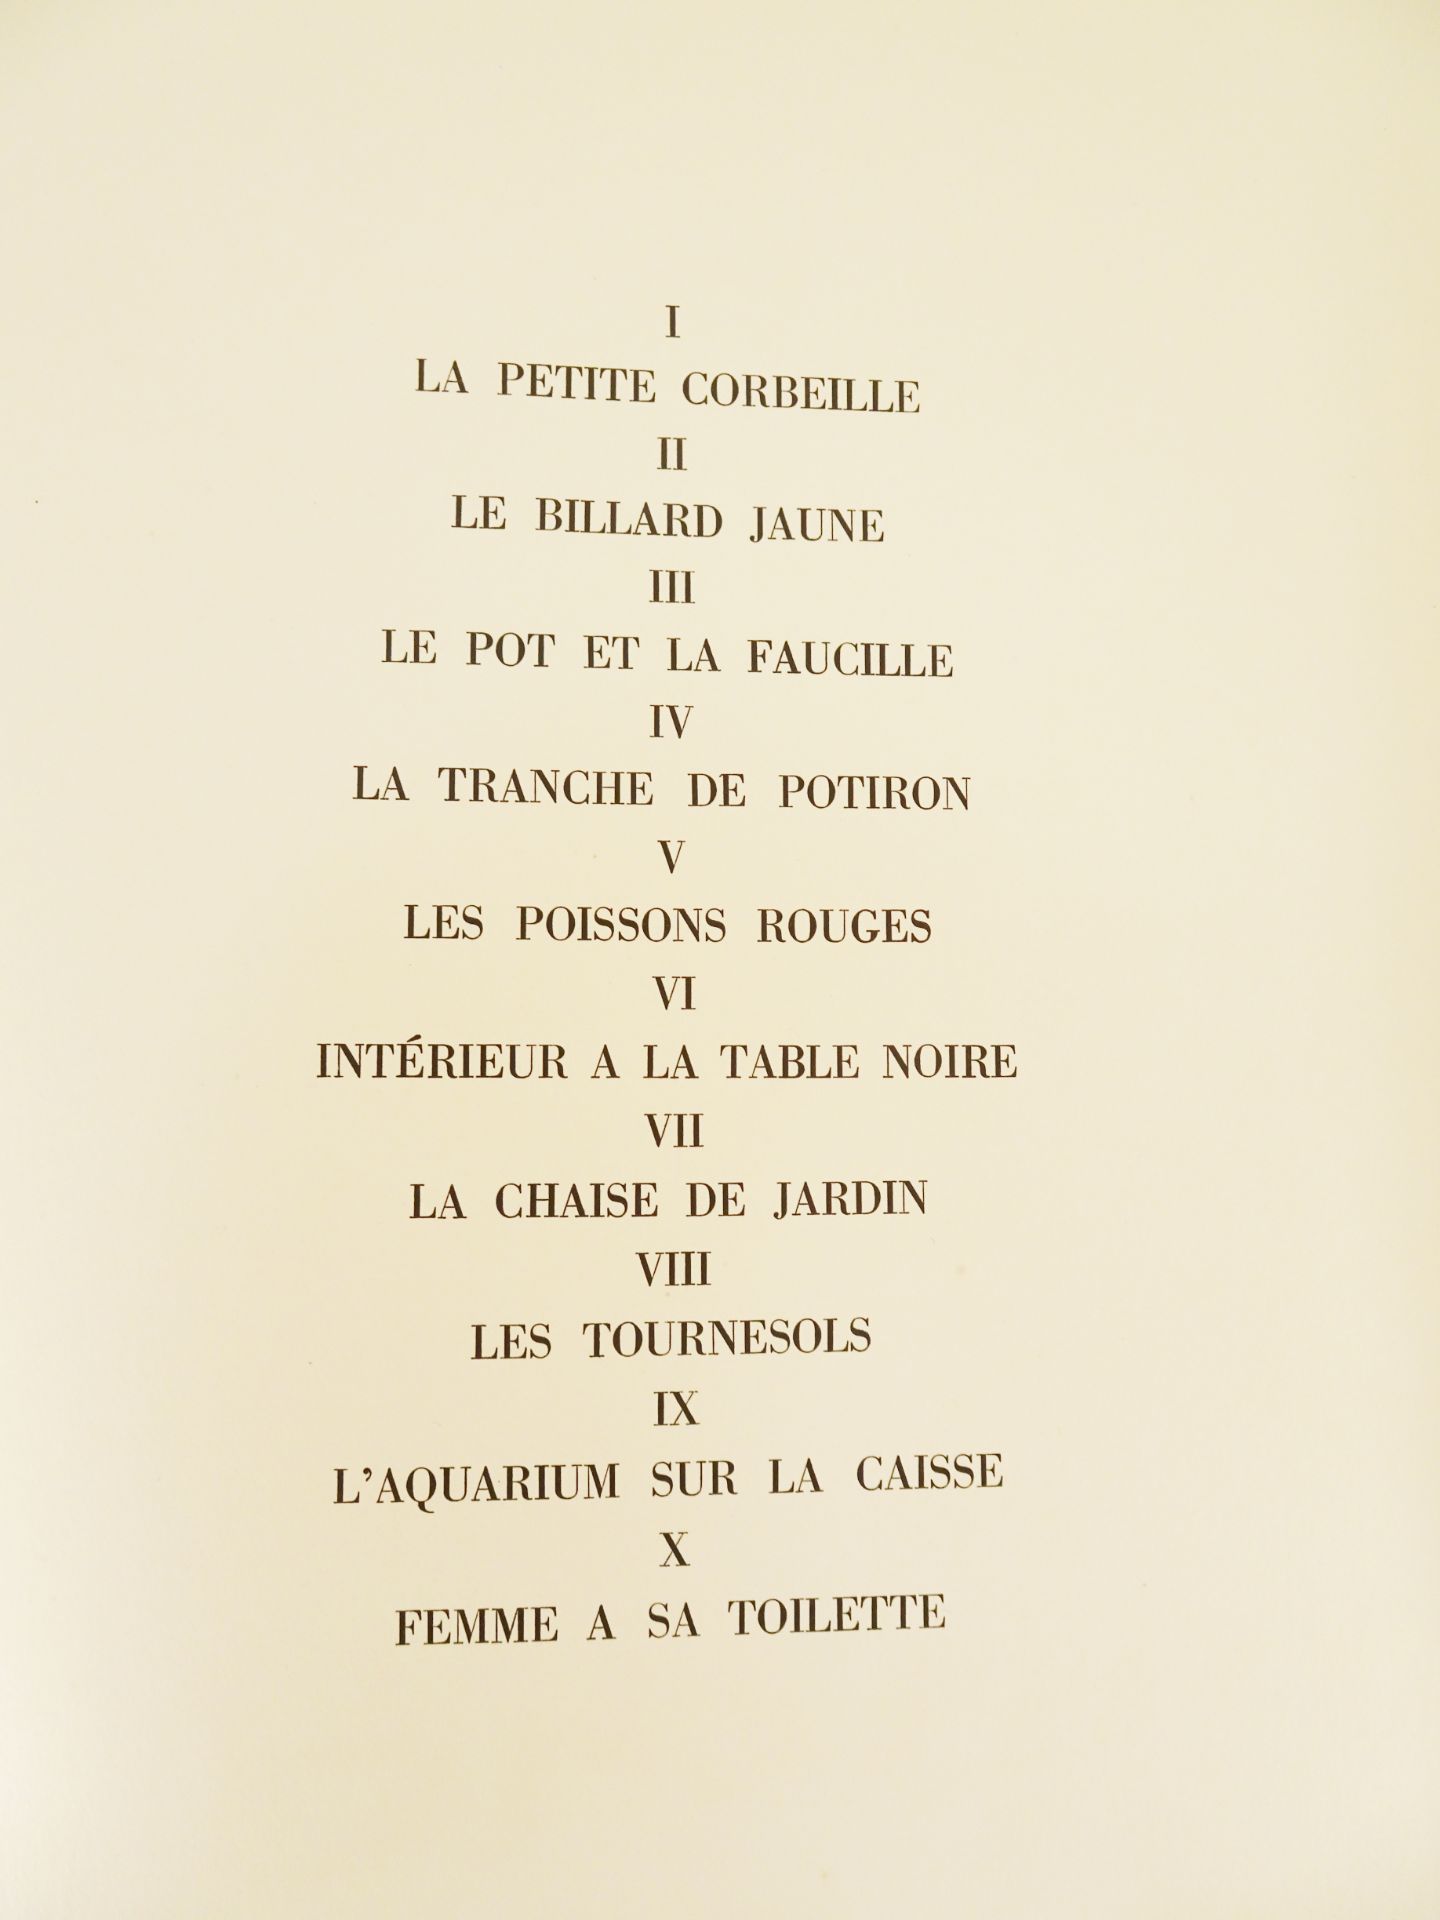 |Art| Braque George & REVERDY Pierre, "Une Aventure méthodique" - signé par l'artiste, 1950 - Image 13 of 17